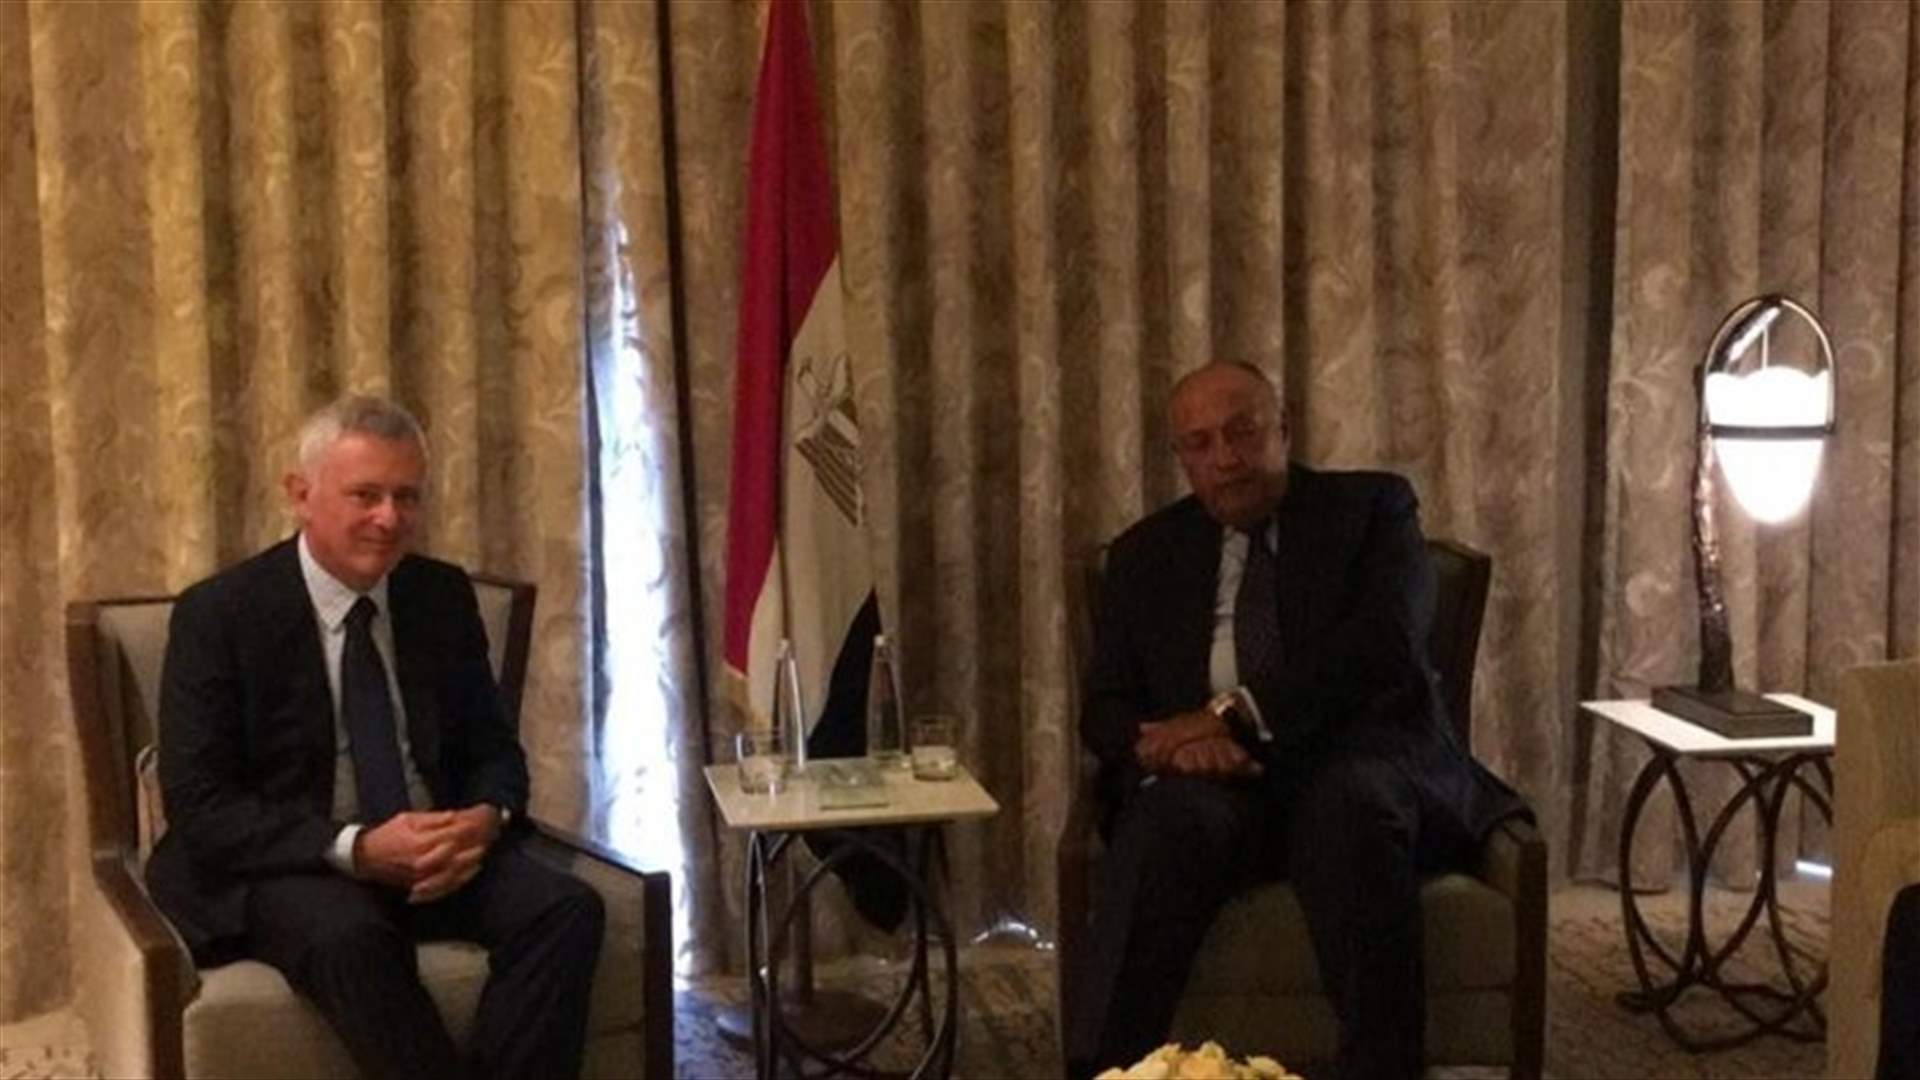 وزير خارجية مصر التقى في مقر إقامته رئيس تيار المردة مع وفد